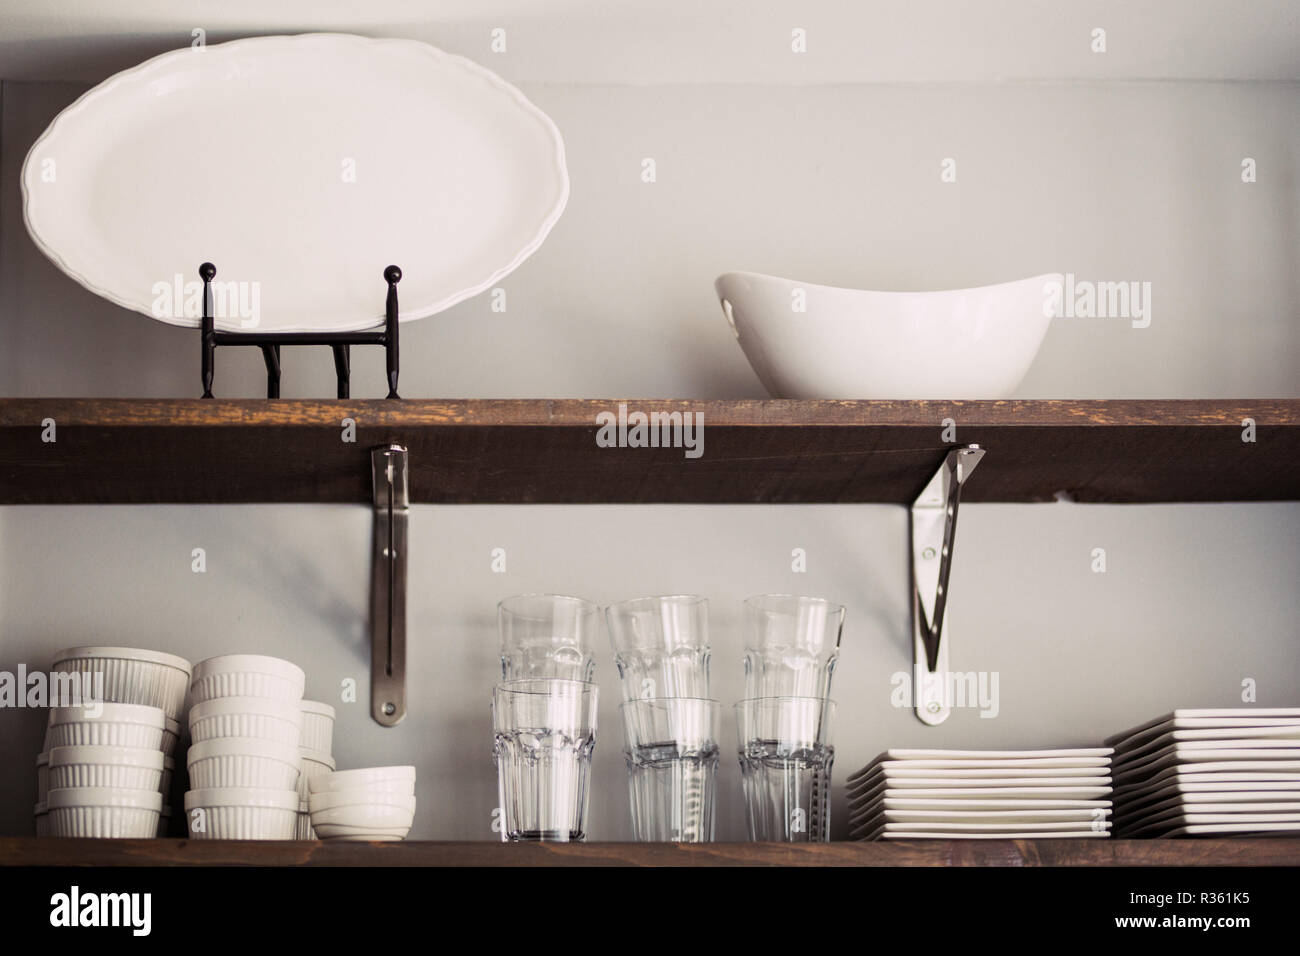 Küche Regal mit Teller, Schüsseln und Tassen Stockfotografie - Alamy